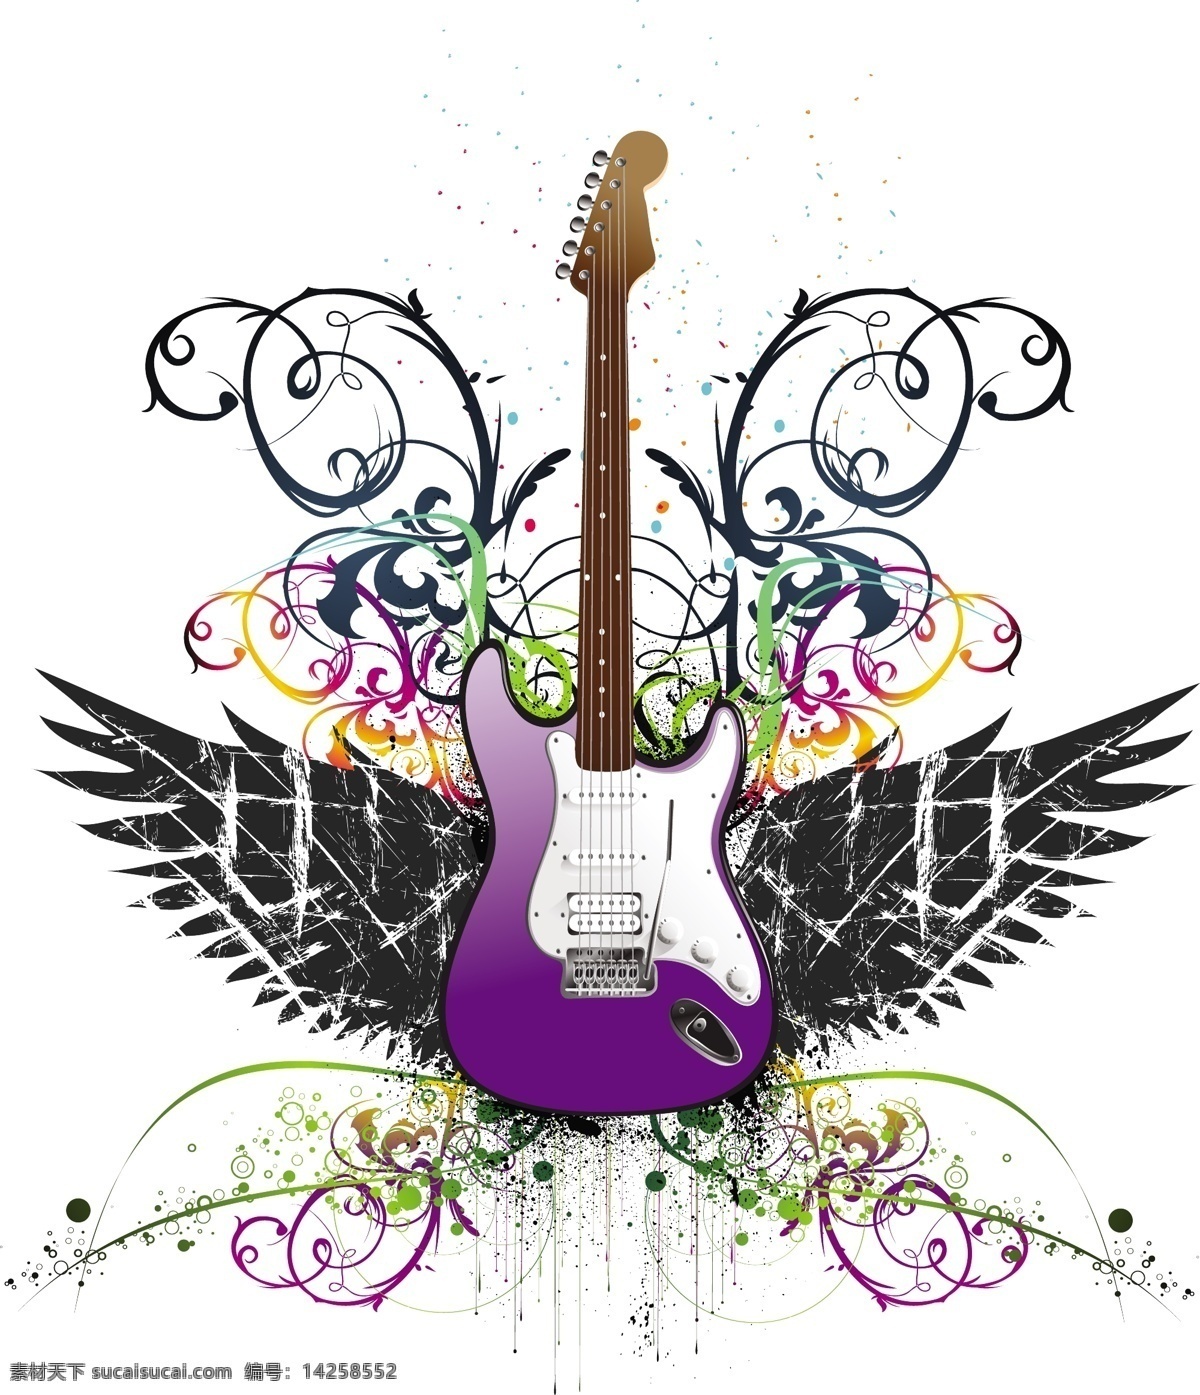 吉他 矢量图 话筒 麦克风 翅膀 双翼 吉他乐器 摇滚音乐 音乐海报 影音娱乐 生活百科 矢量素材 白色